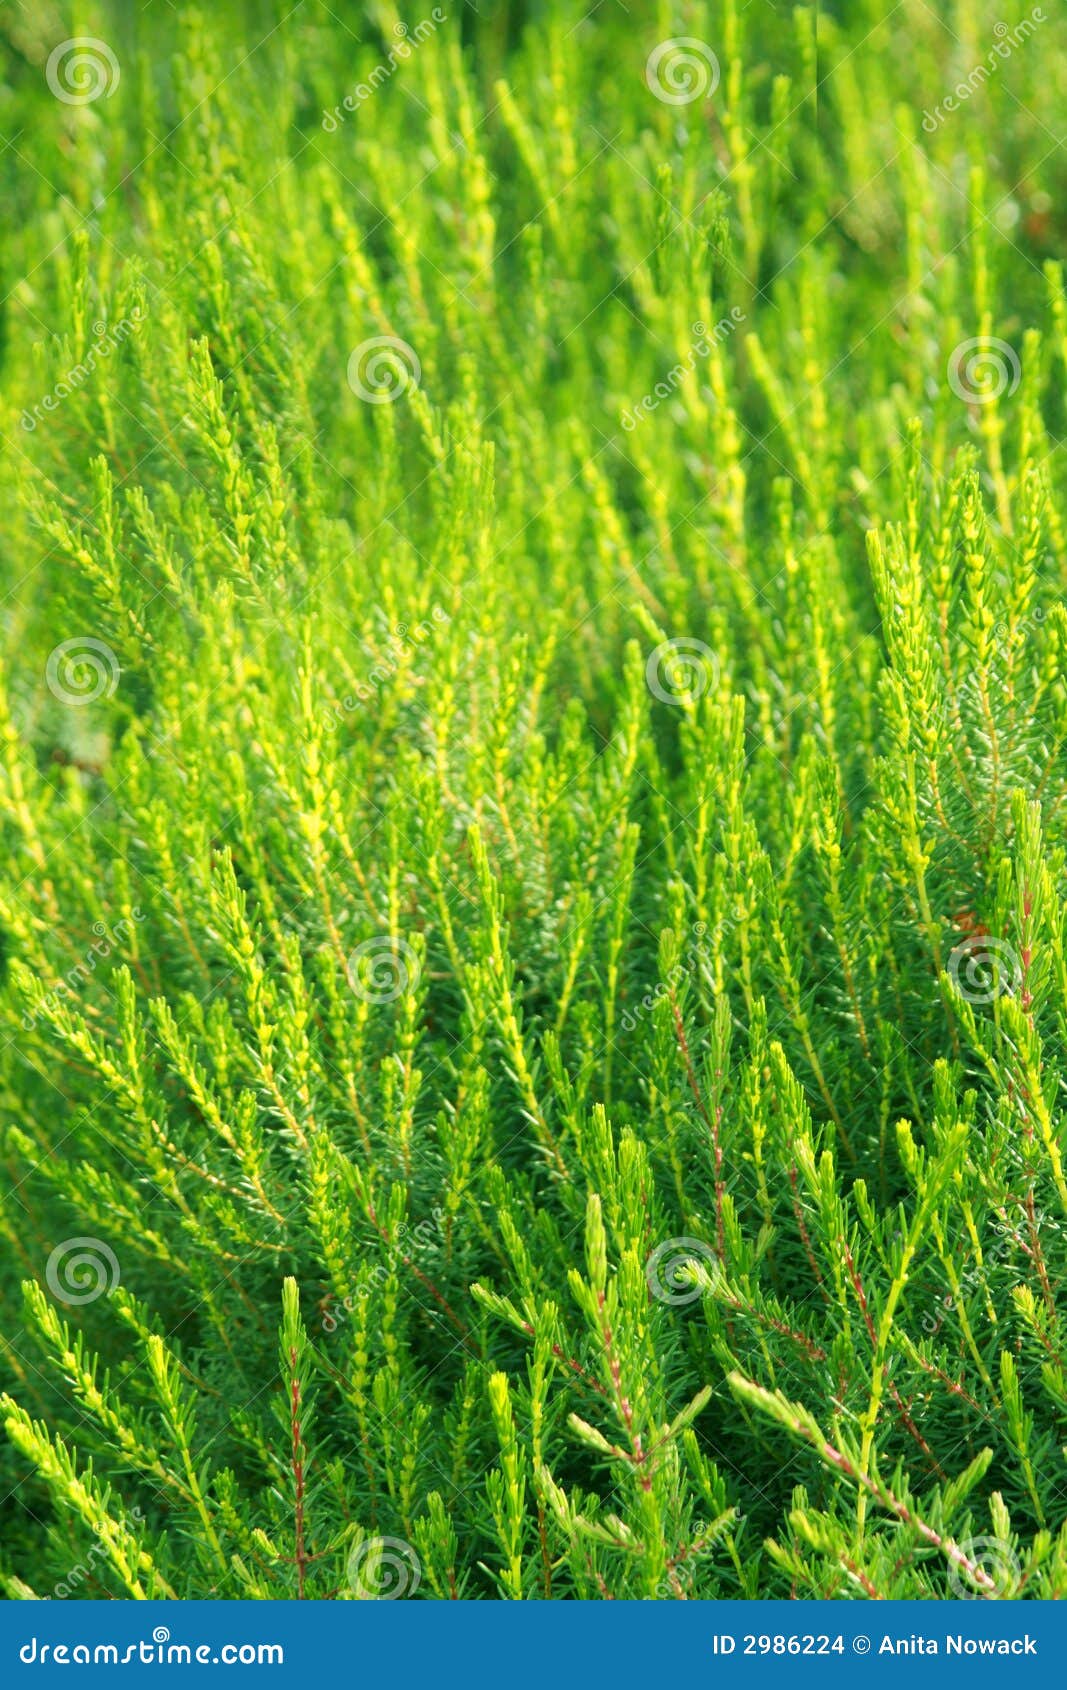 fertile green vegetation